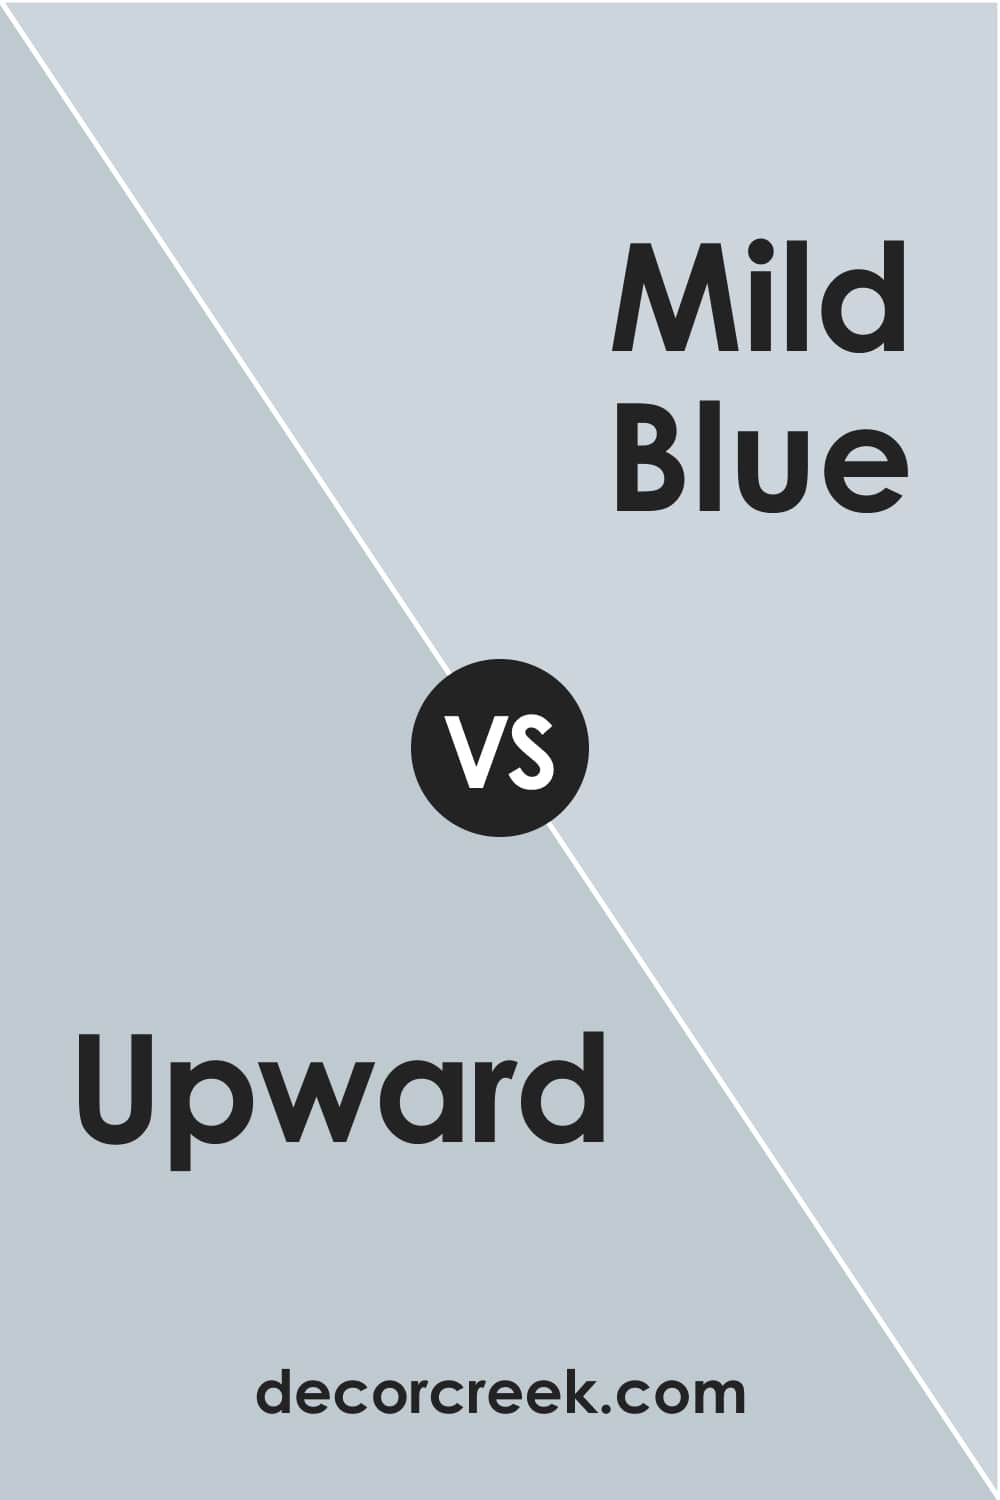 Upward vs Mild Blue